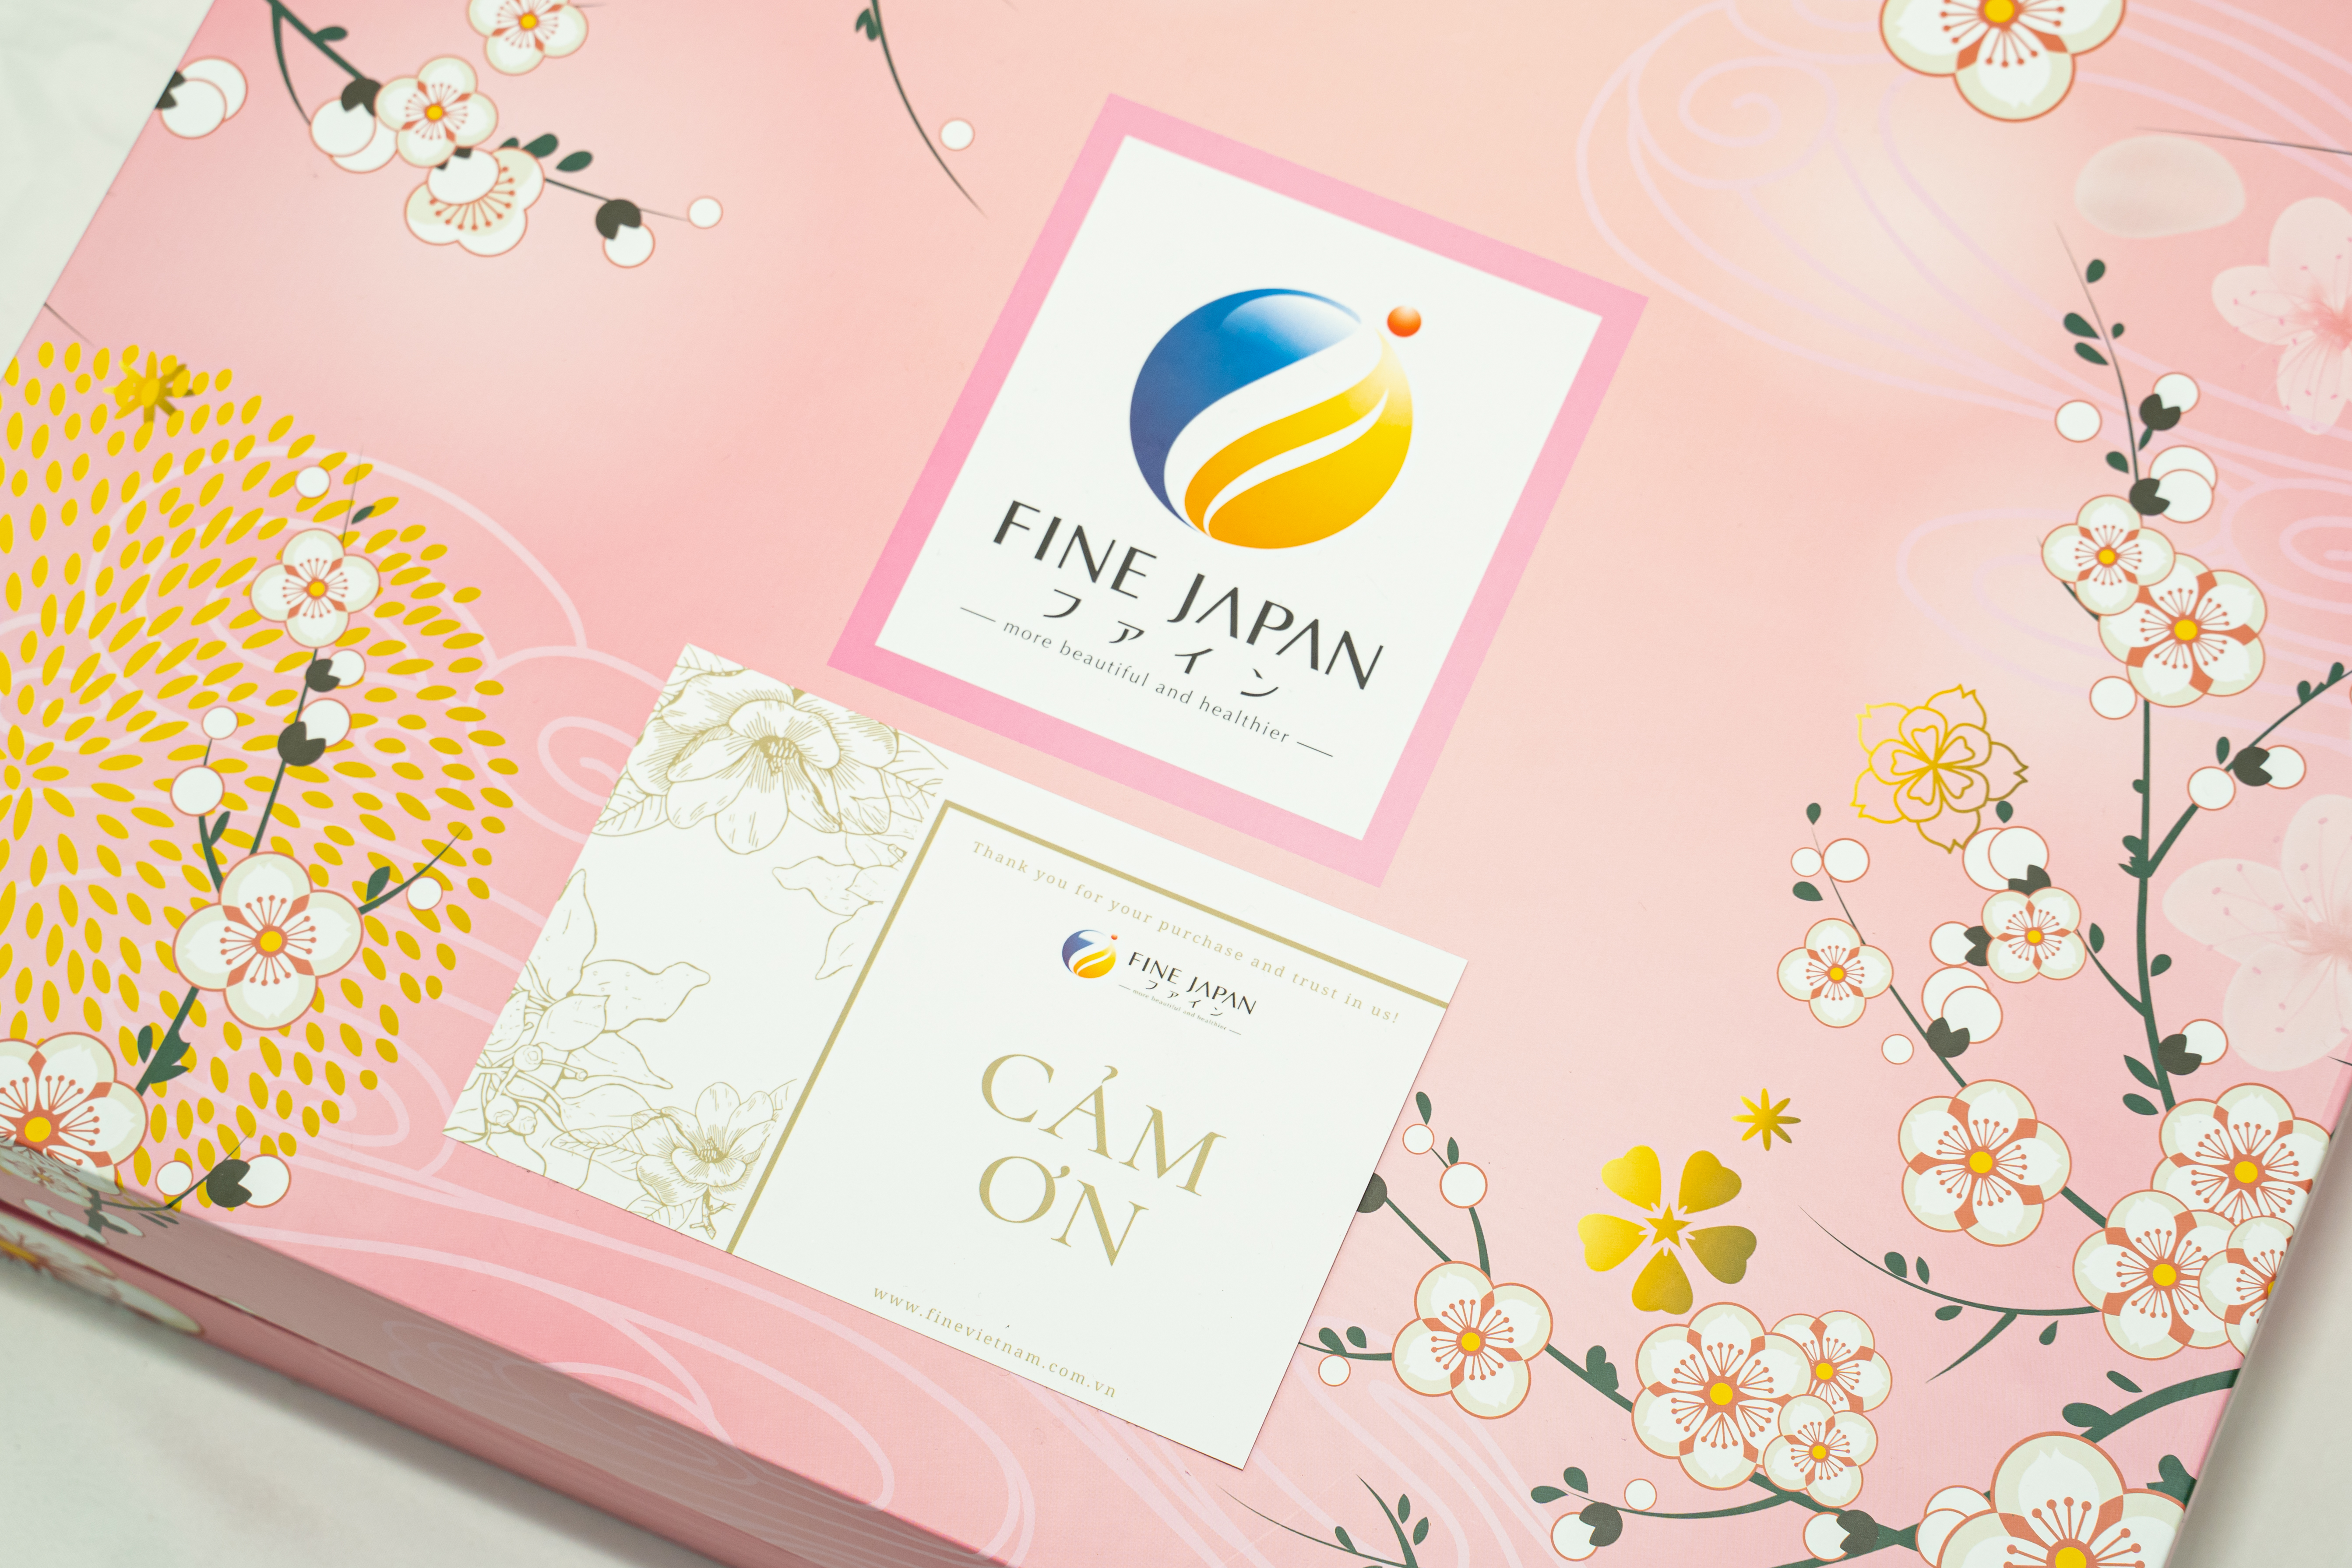 [Hộp quà Tết 2023] SAKURA TẾT ĐONG ĐẦY Fine Japan tặng người phụ nữ bạn yêu (Collagen, Vitamin CD, Viên uống chống nắng, bột uống ngủ ngon)